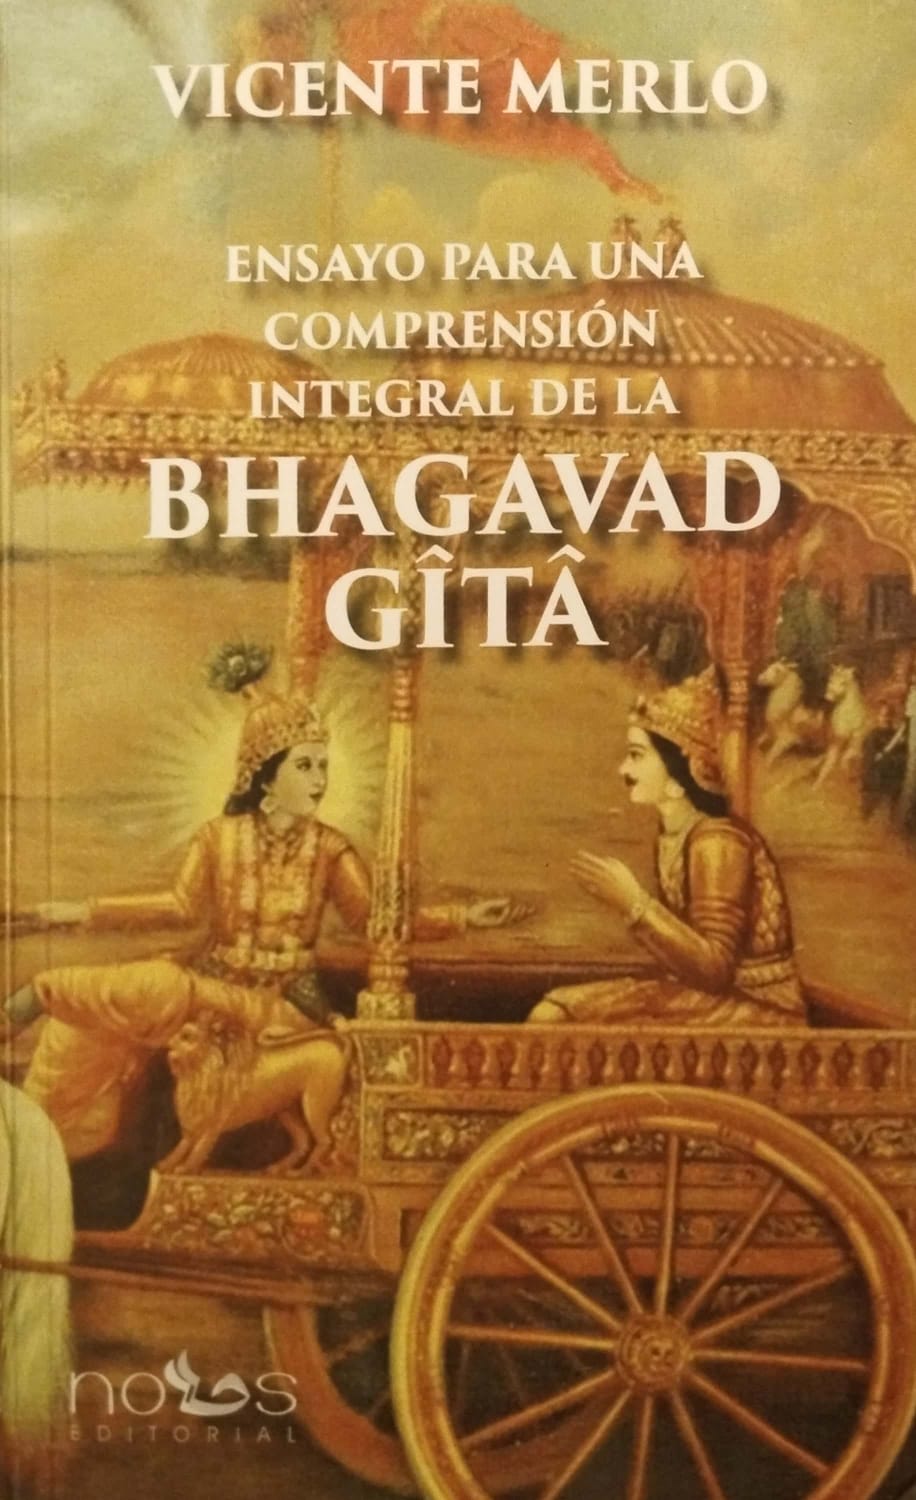 Presentación del Libro del Dr. Vicente Merlo "Ensayo para la comprensión integral de la BHAGAVAD GITA"